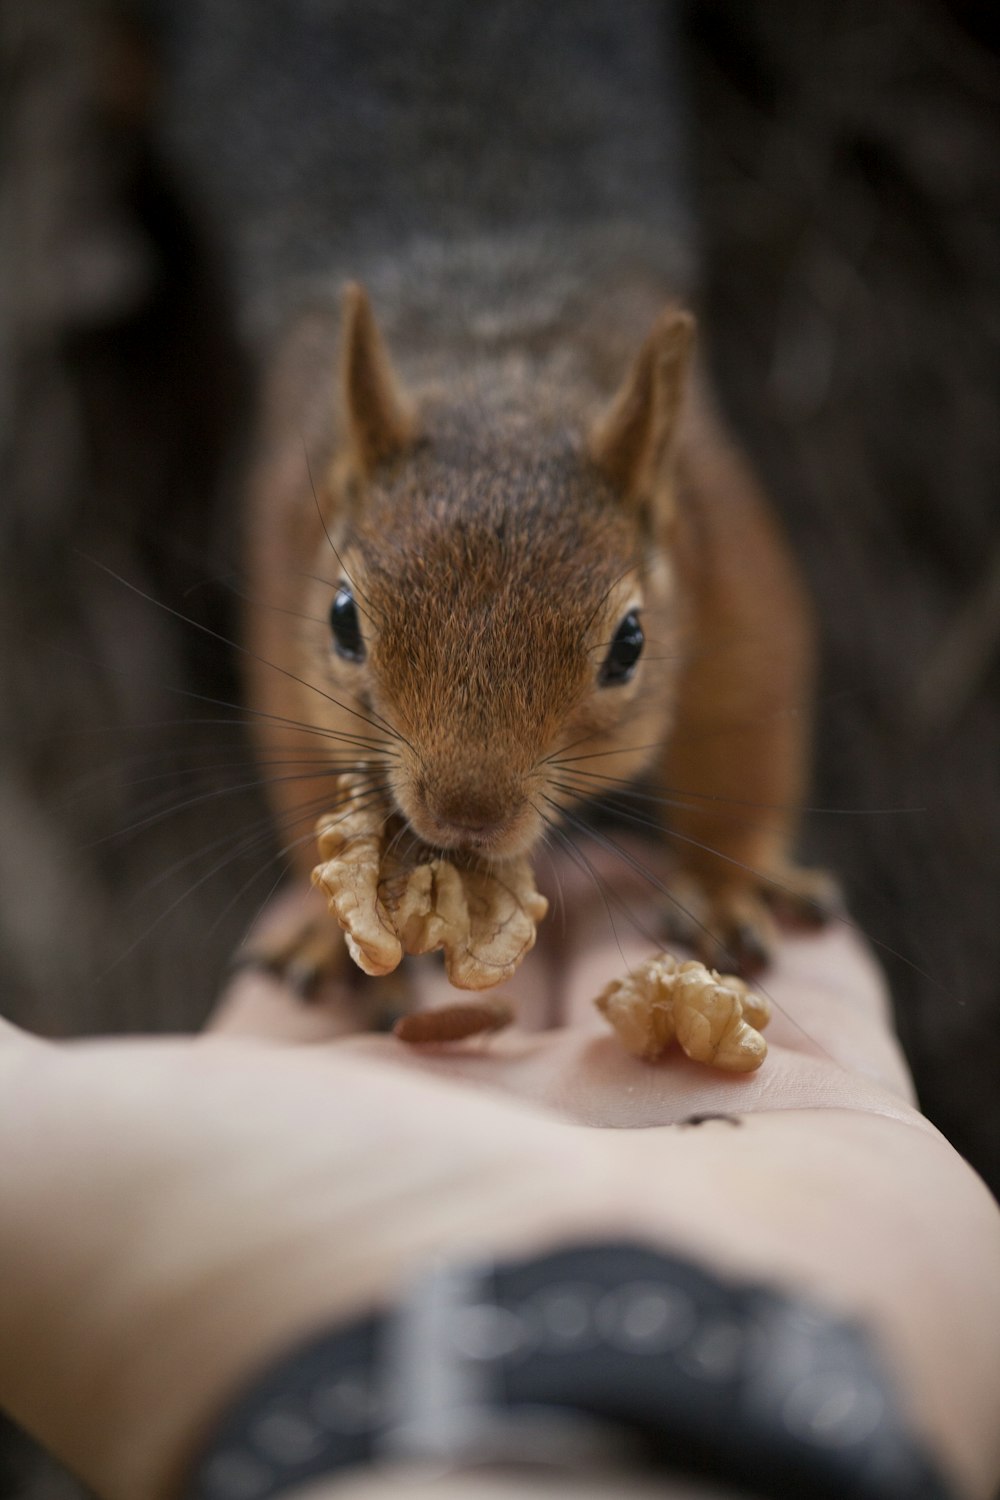 uno scoiattolo che mangia cibo dalla mano di una persona